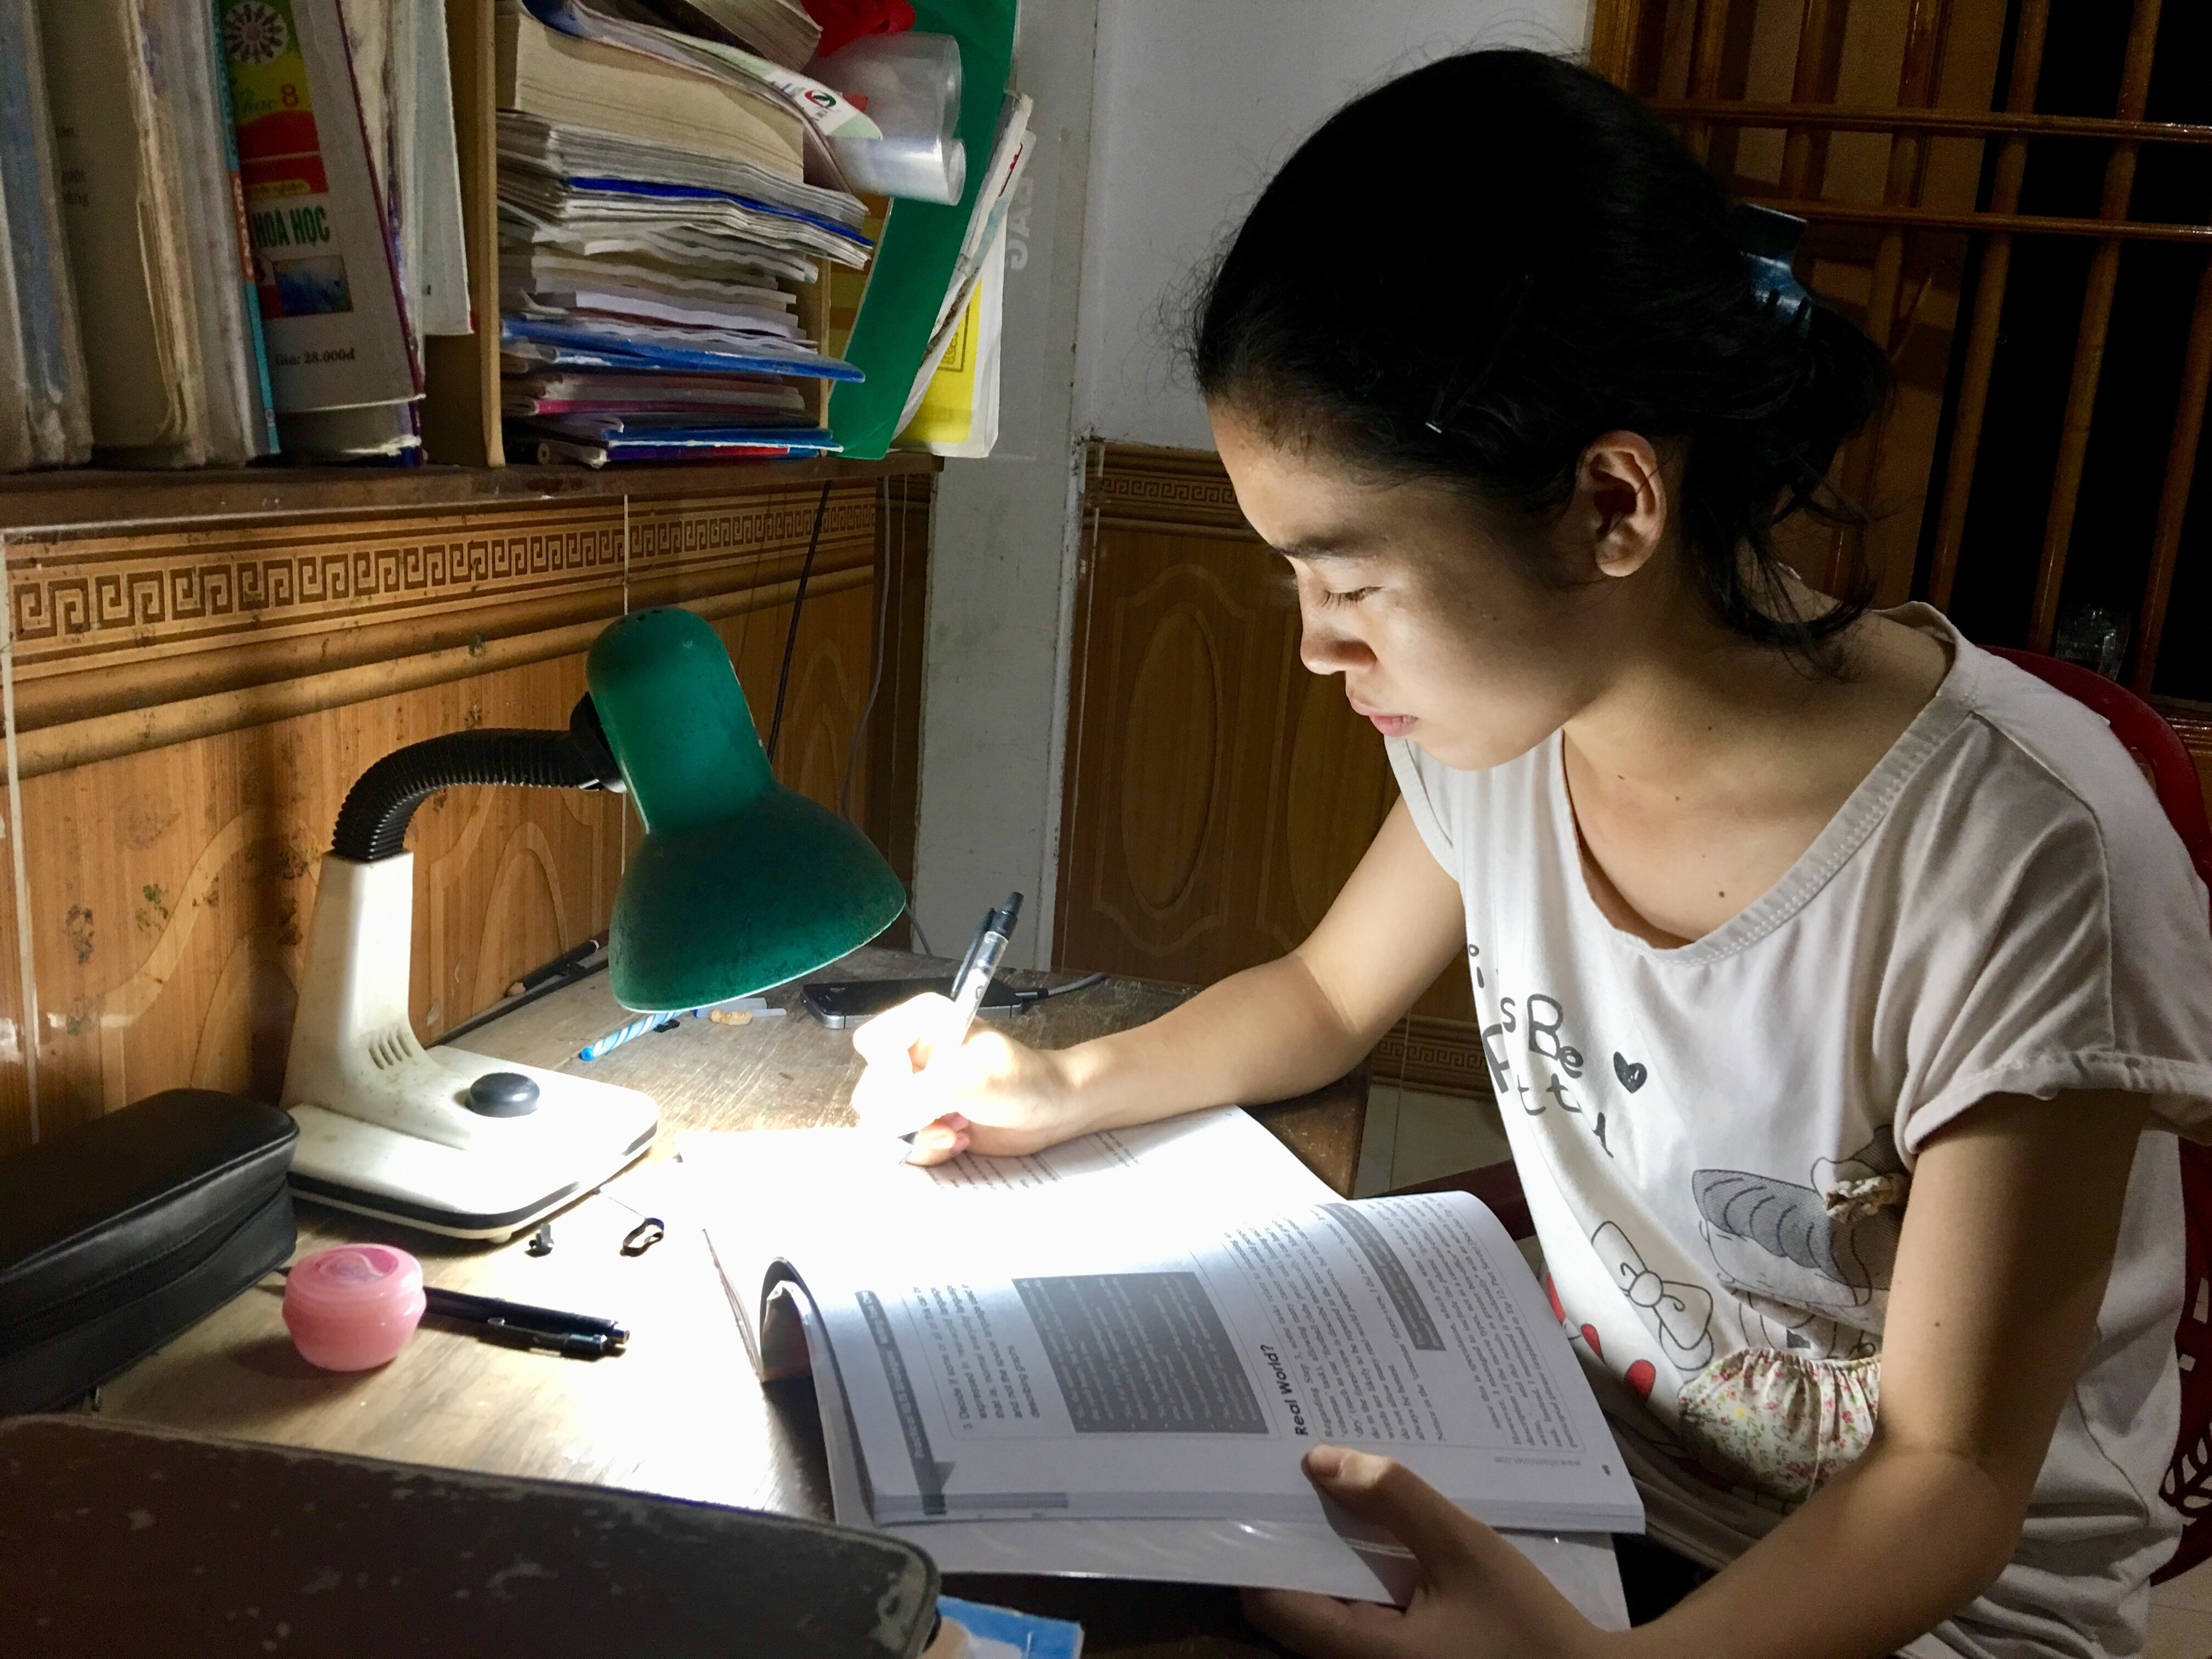 Say mê học tập đã giúp Nguyễn Thị Minh đạt kết quả học tập tốt. Ảnh: Lê Ngọc Phương